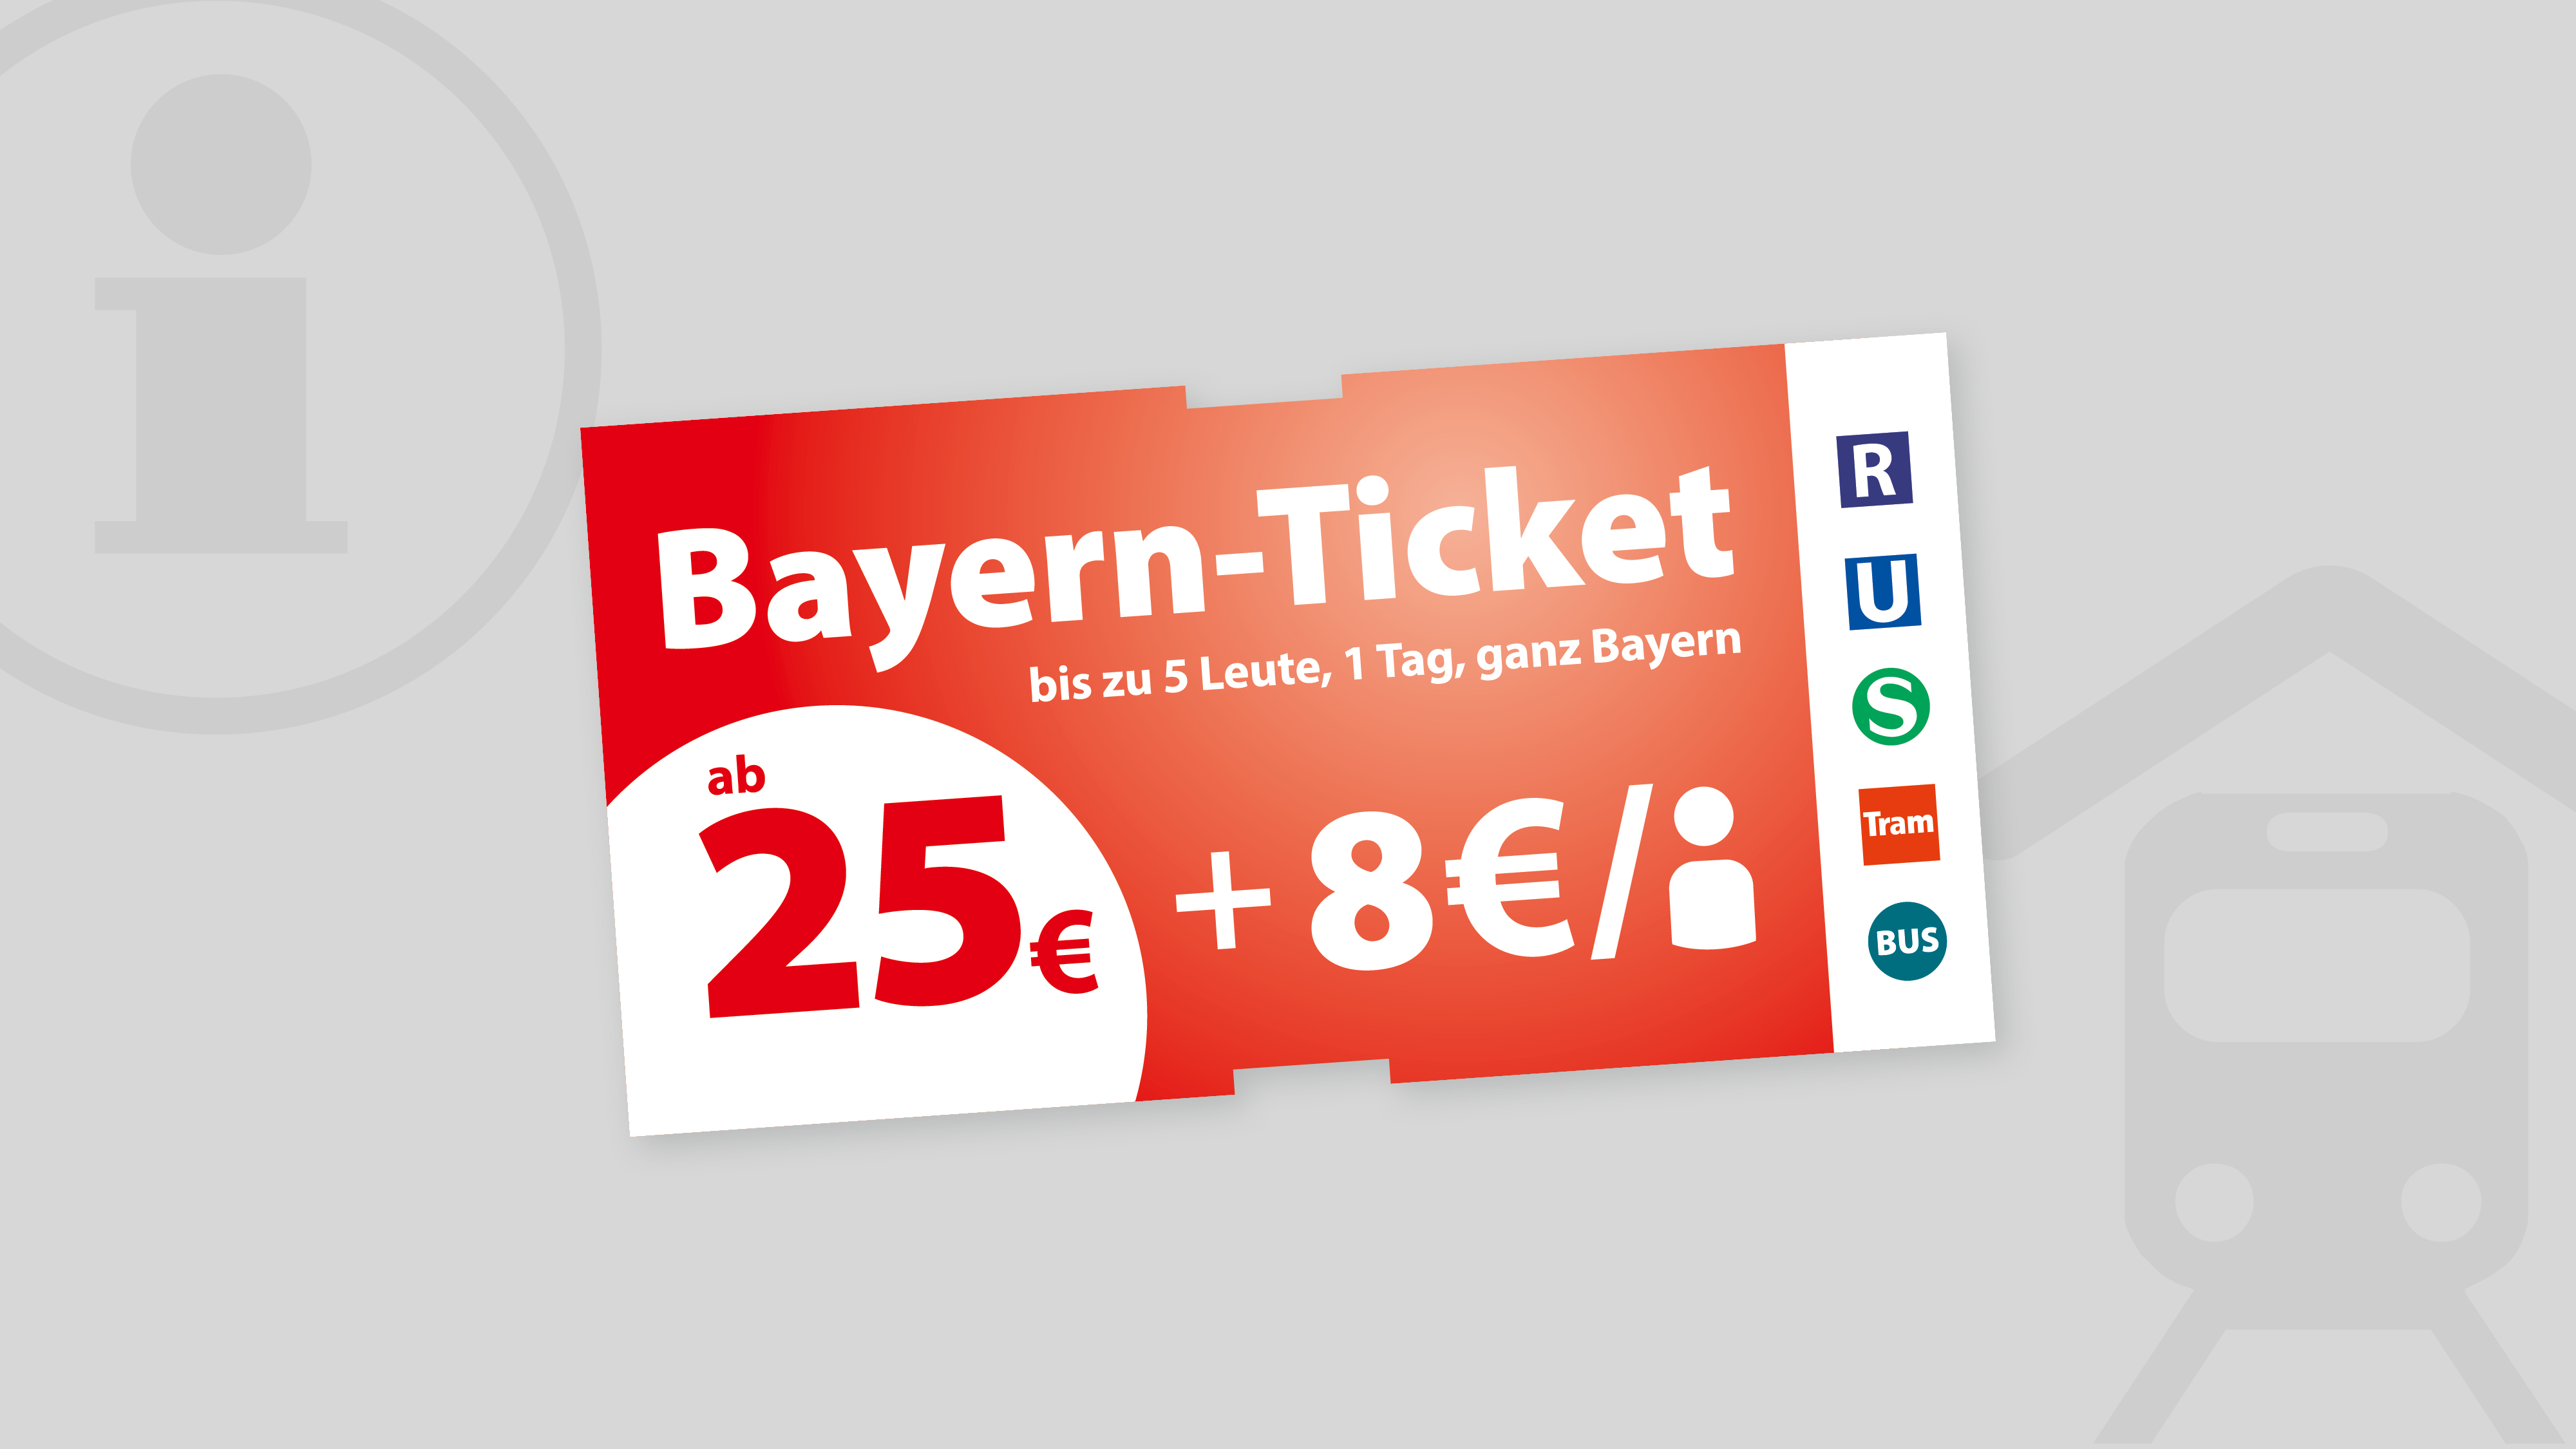 Bayern-Ticket - Bahnland Bayern